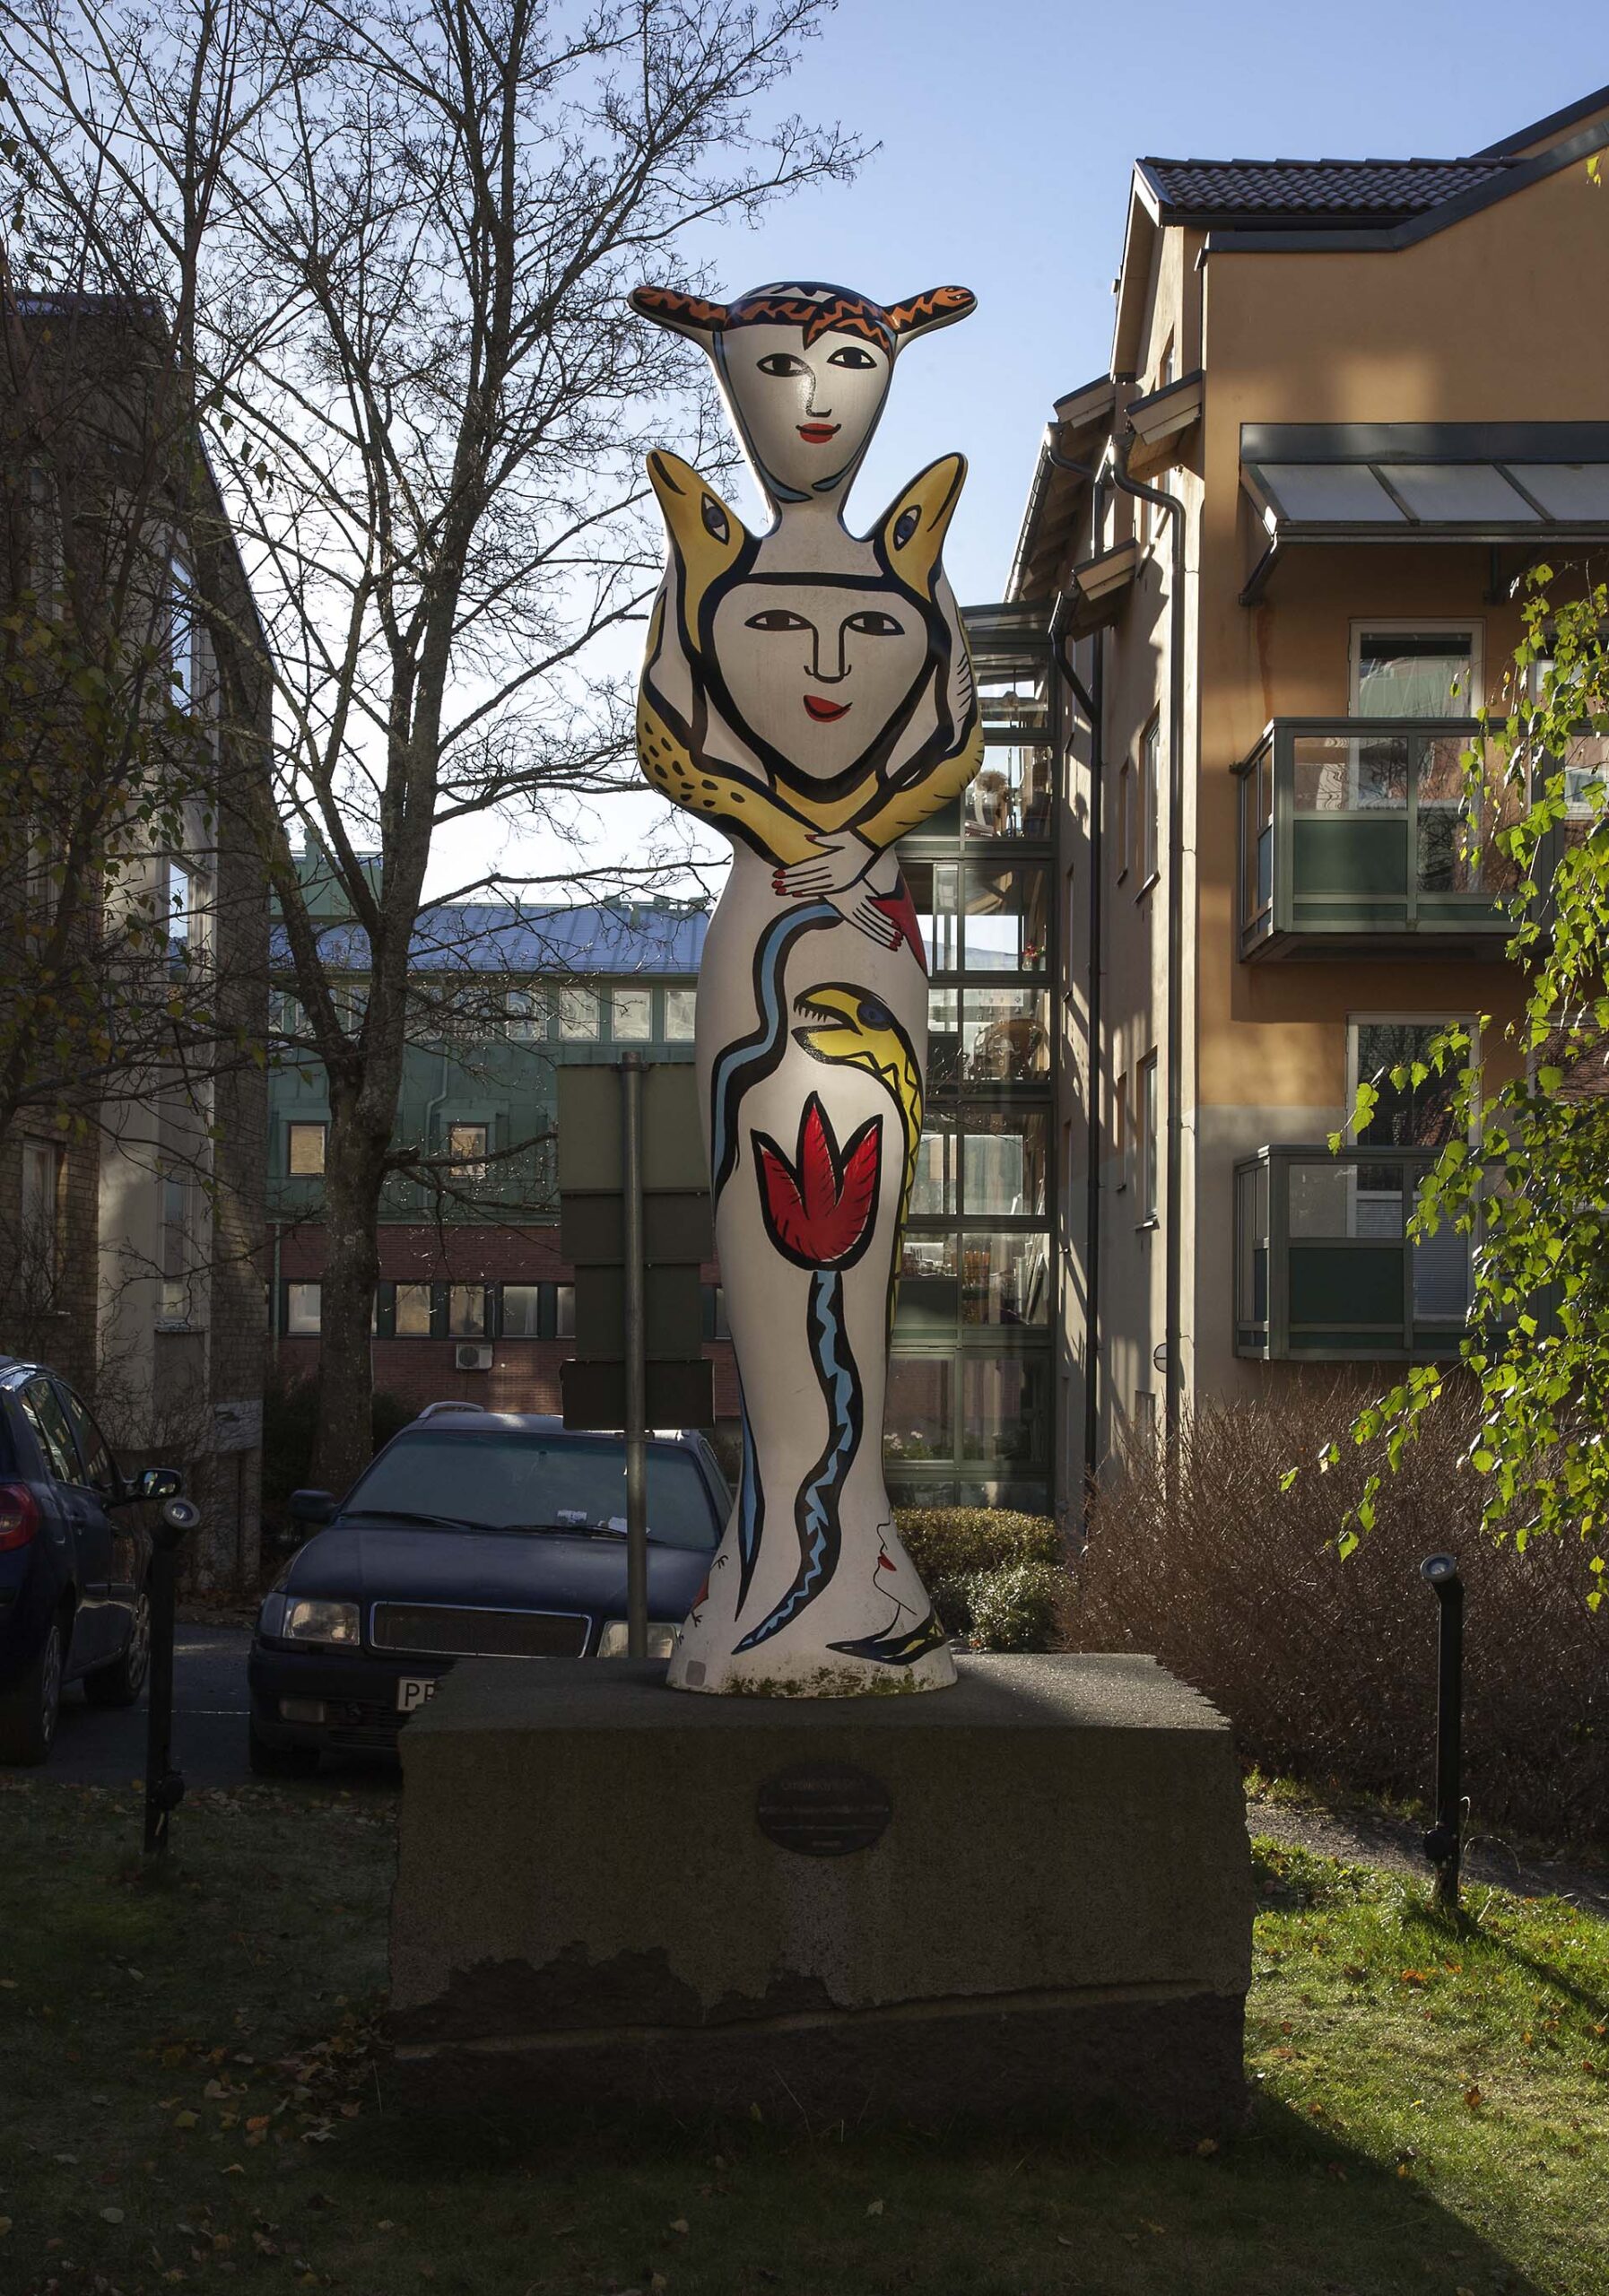 Ormkvinnan är en tre meter hög skulptur. Blicken är vänlig och hon har ett leende på läpparna.